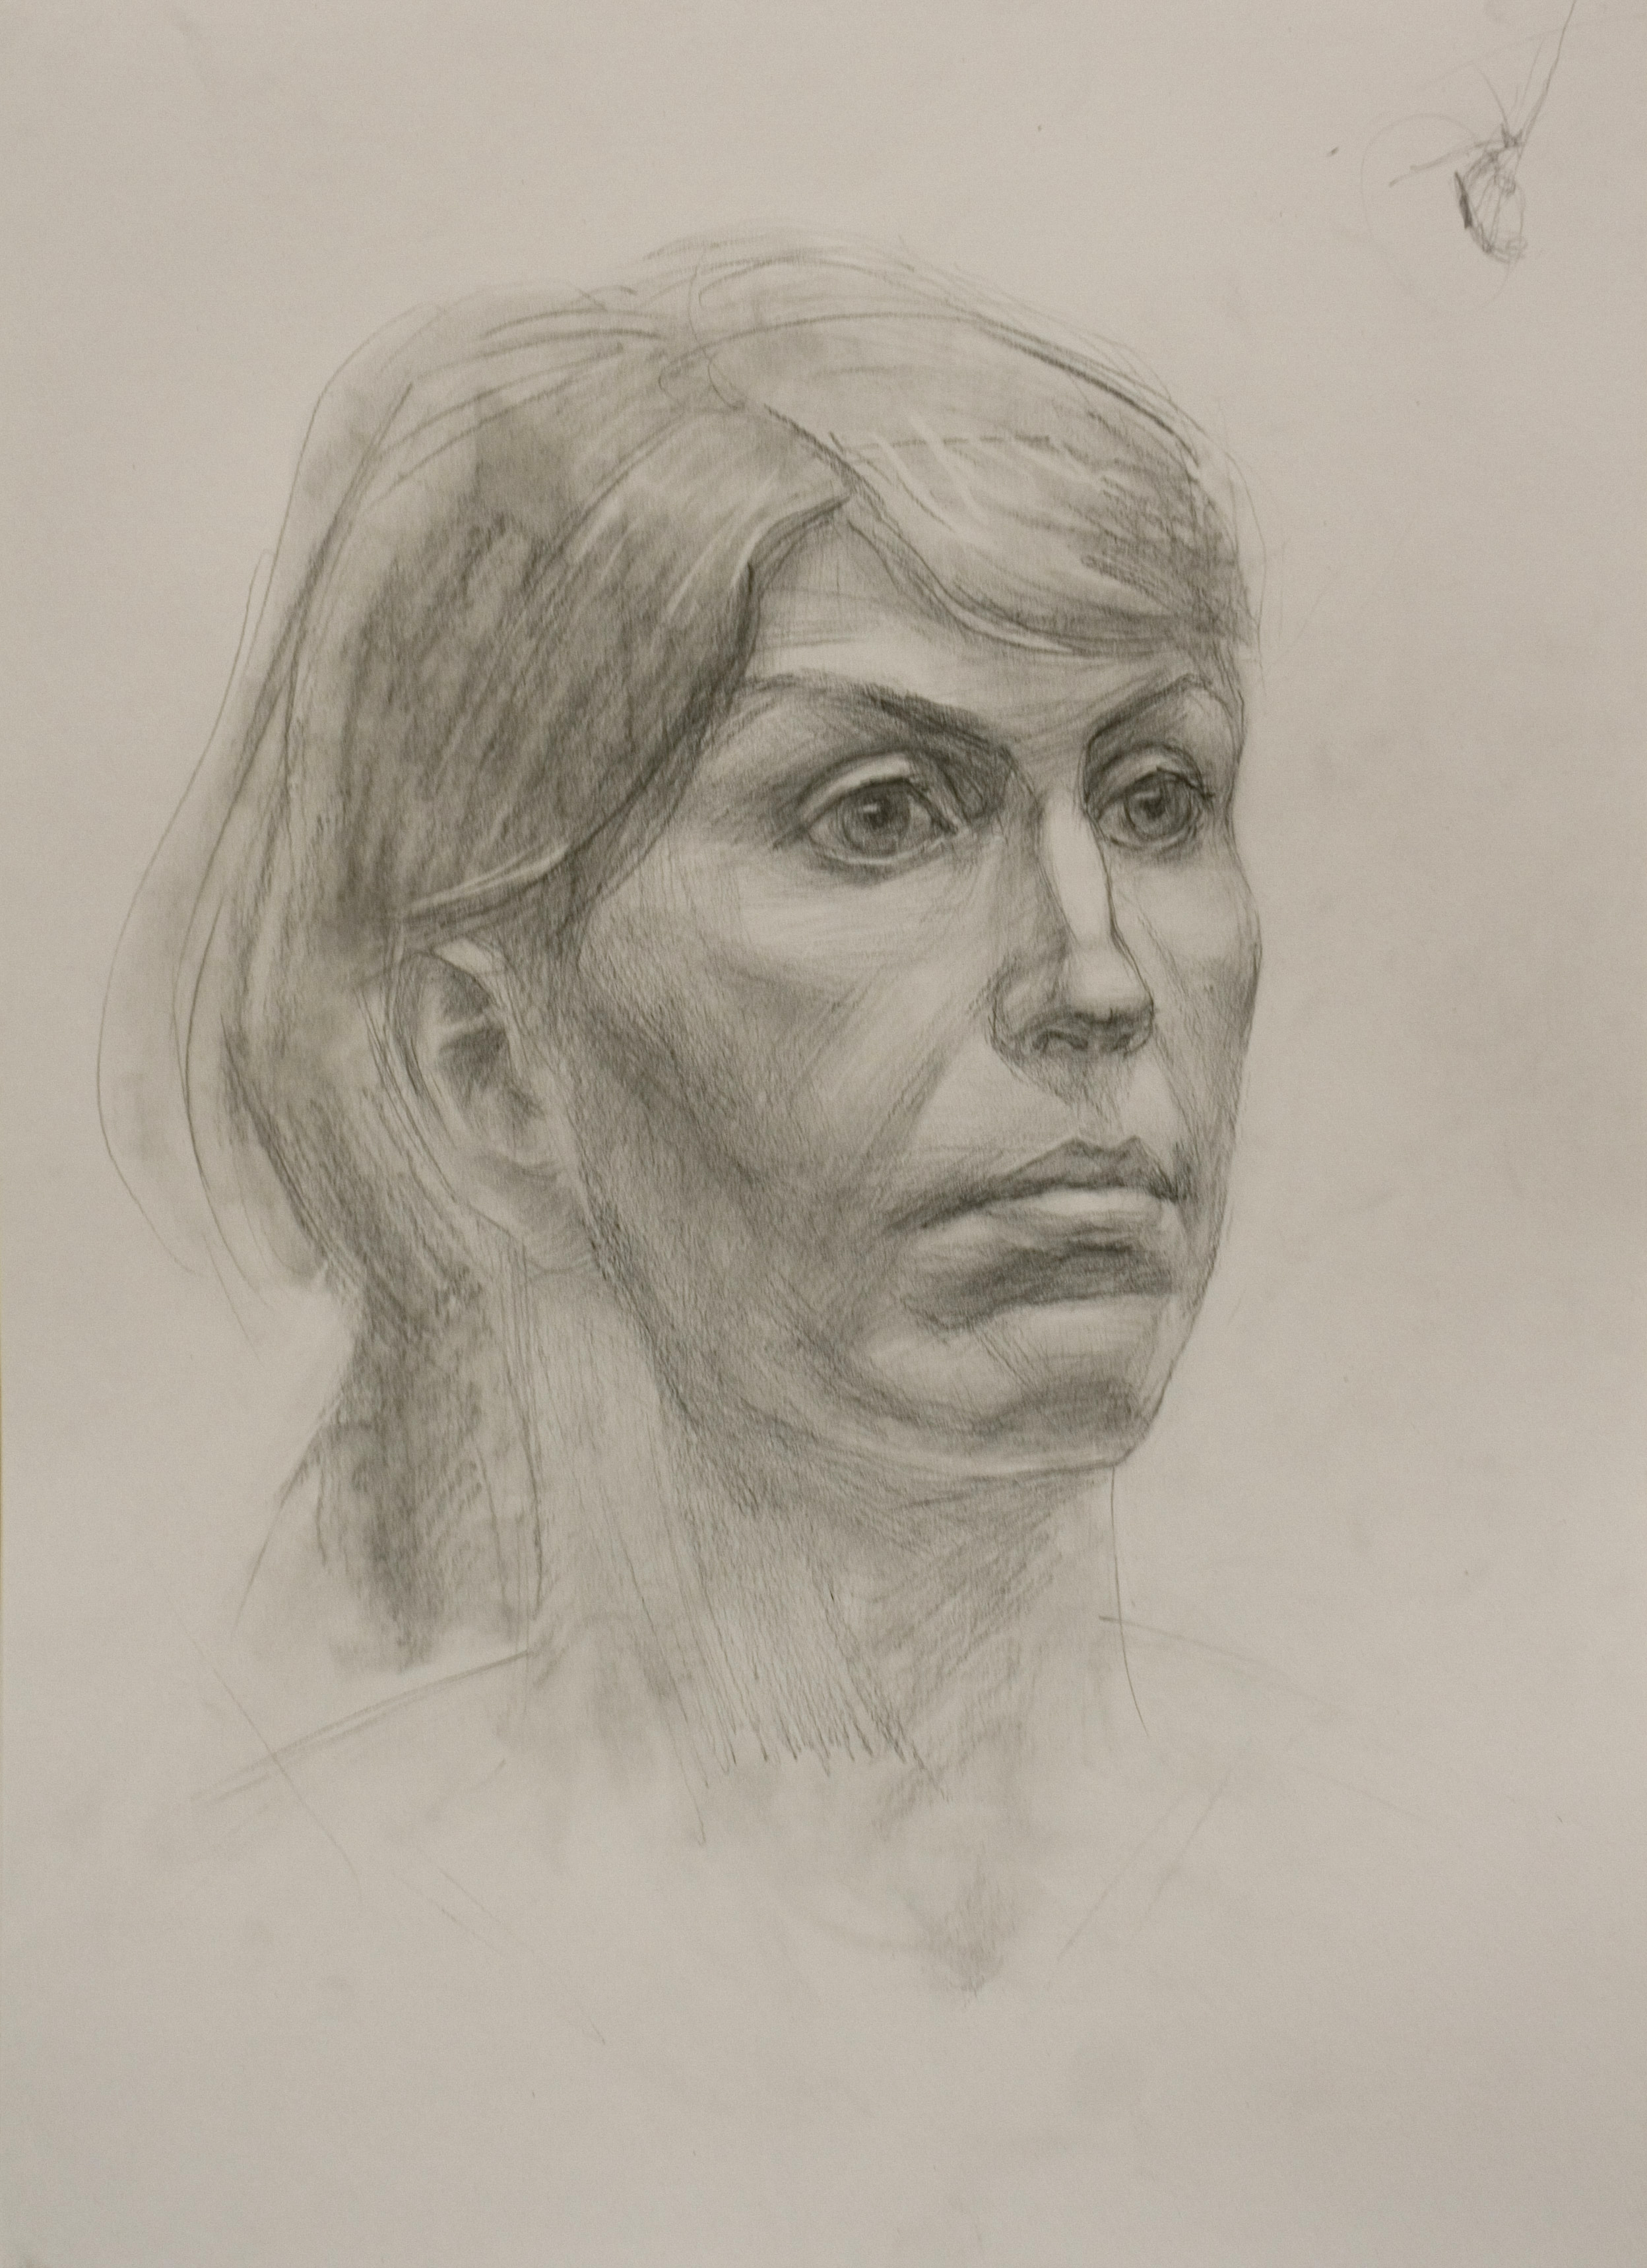 Портрет - академический рисунок карандашом